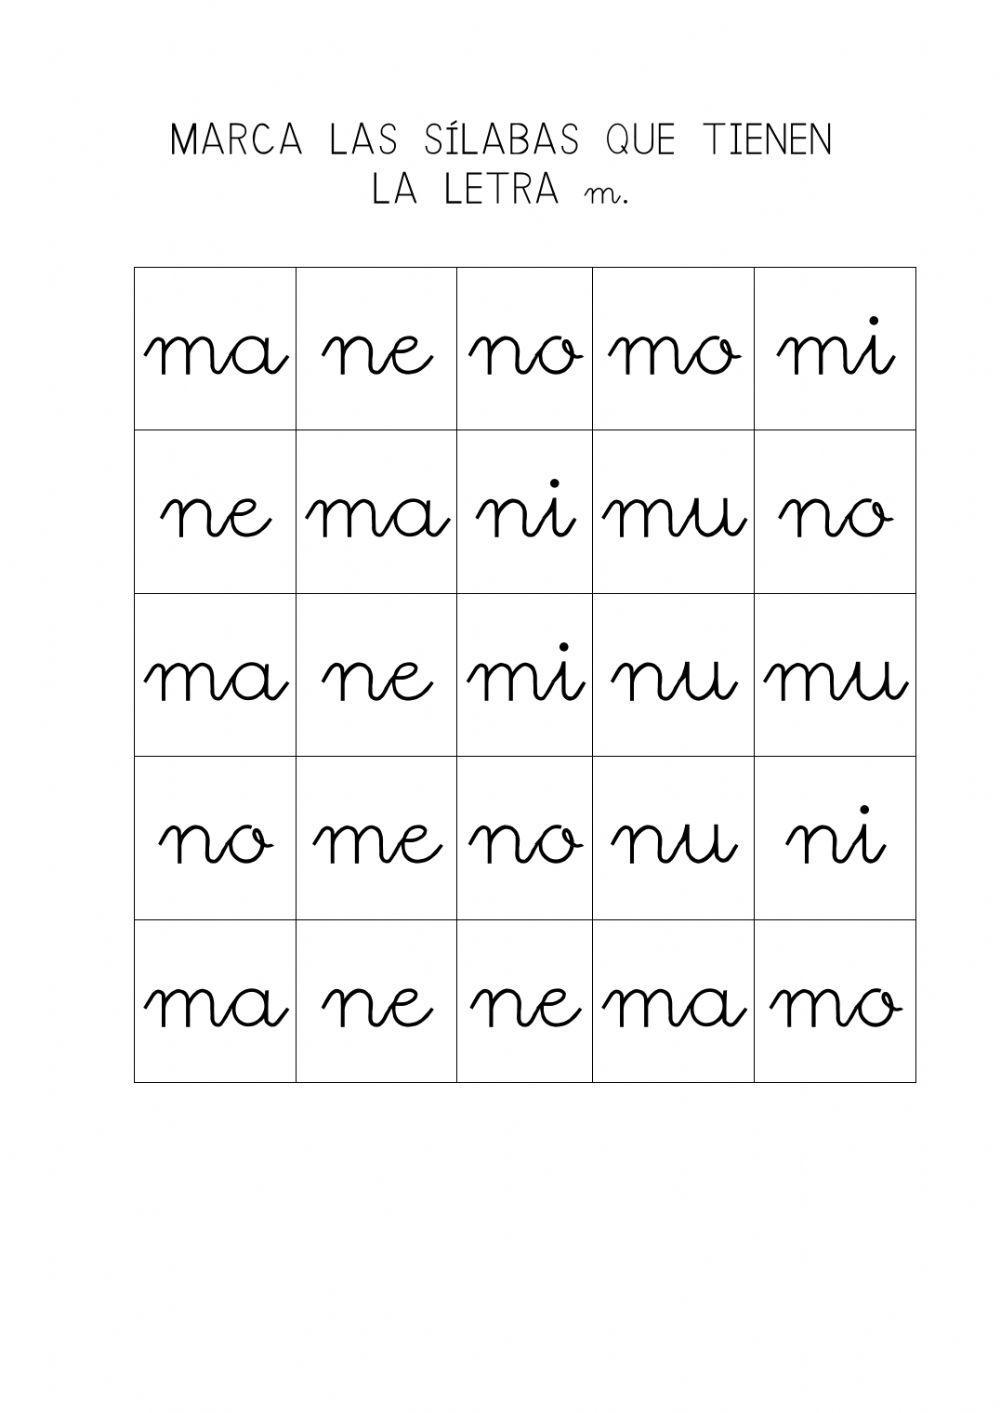 Marca las sílabas que tienen la letra m.